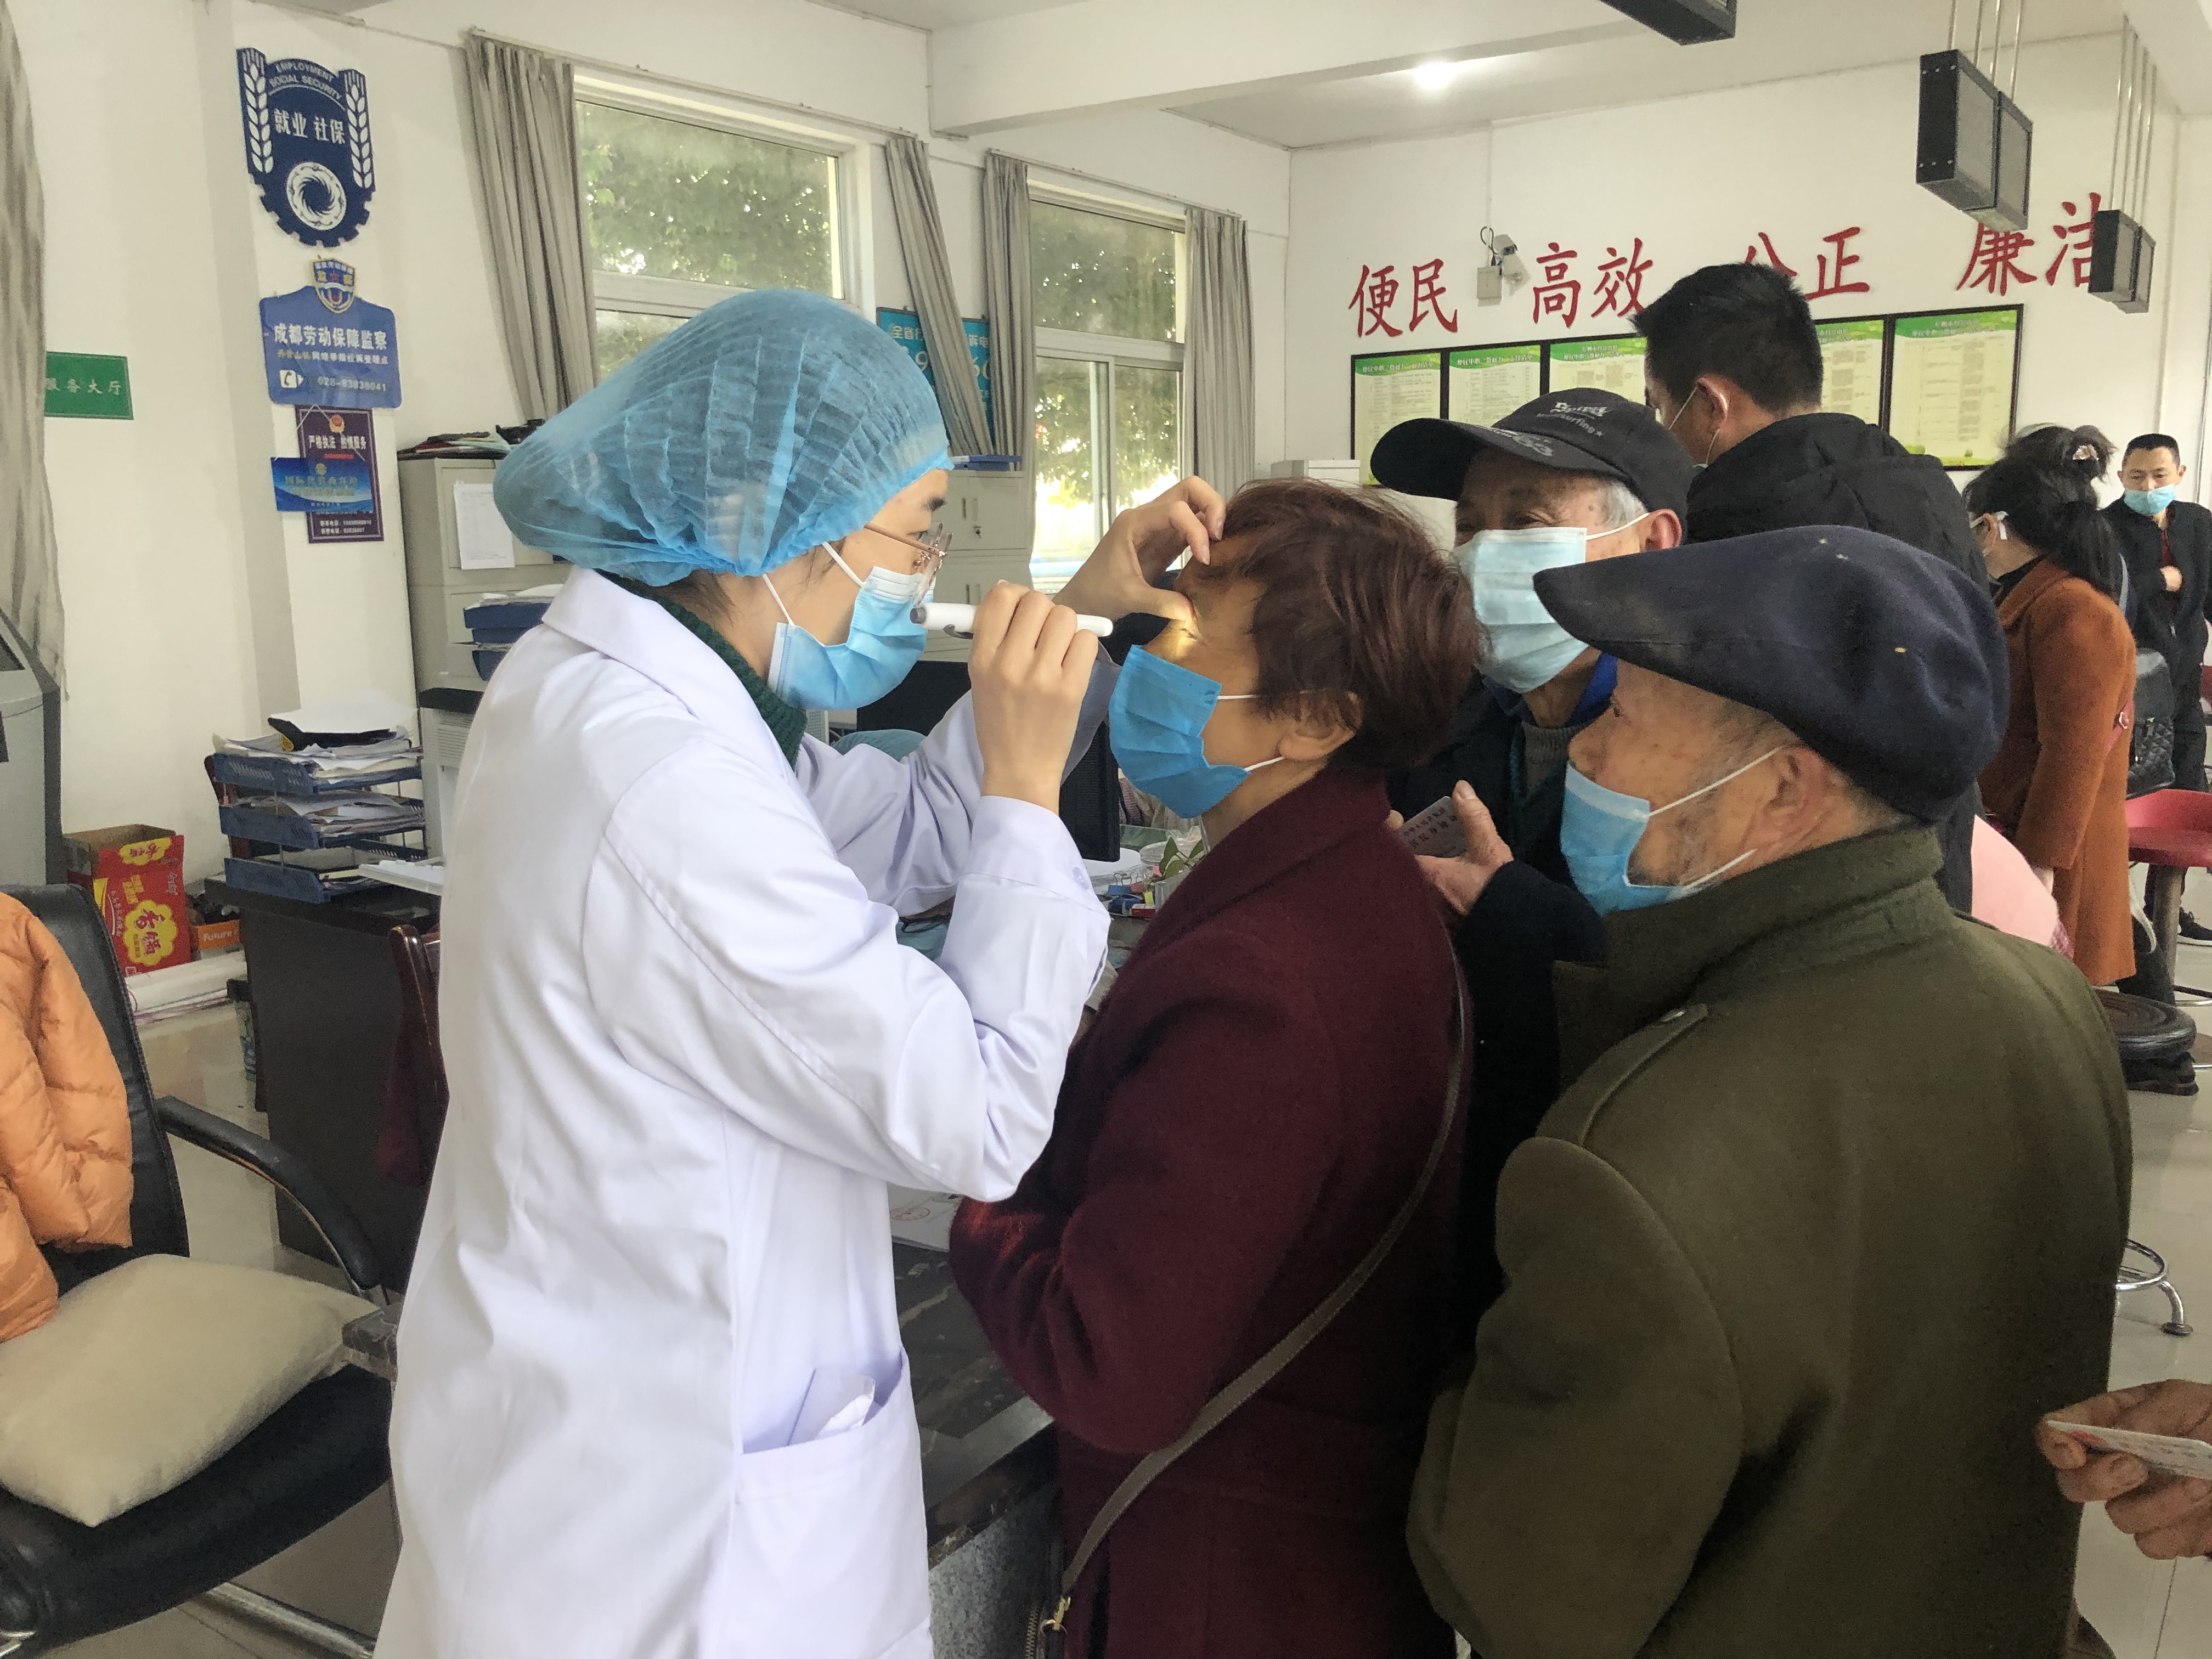 彭州市中医院老师为妇女群众检查眼睛